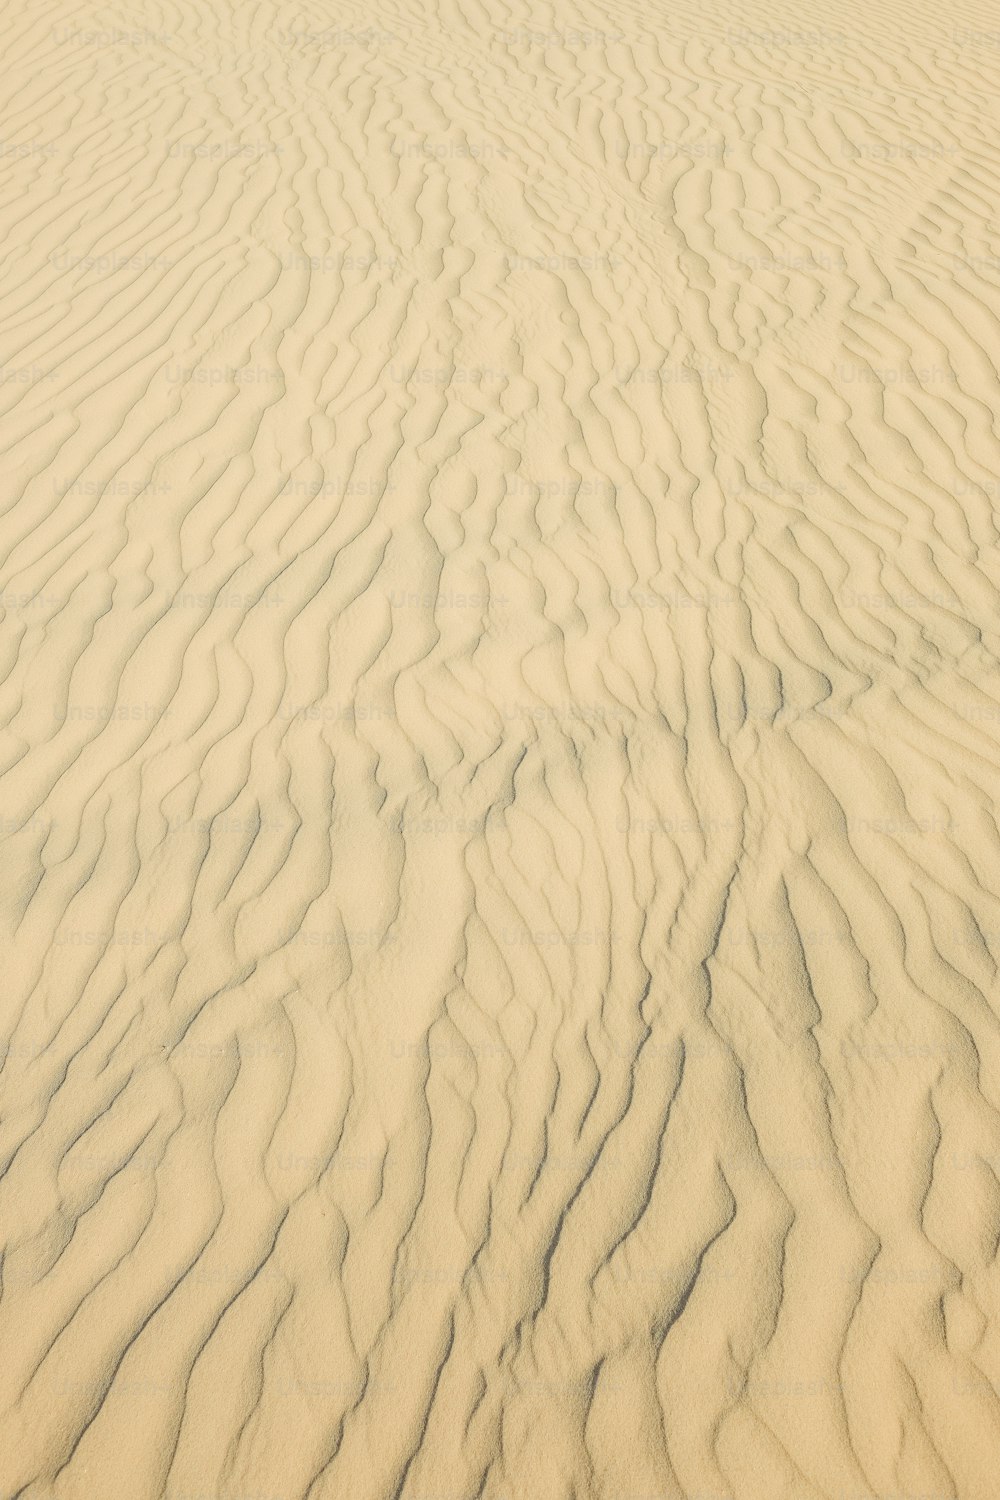 um close up de uma duna de areia